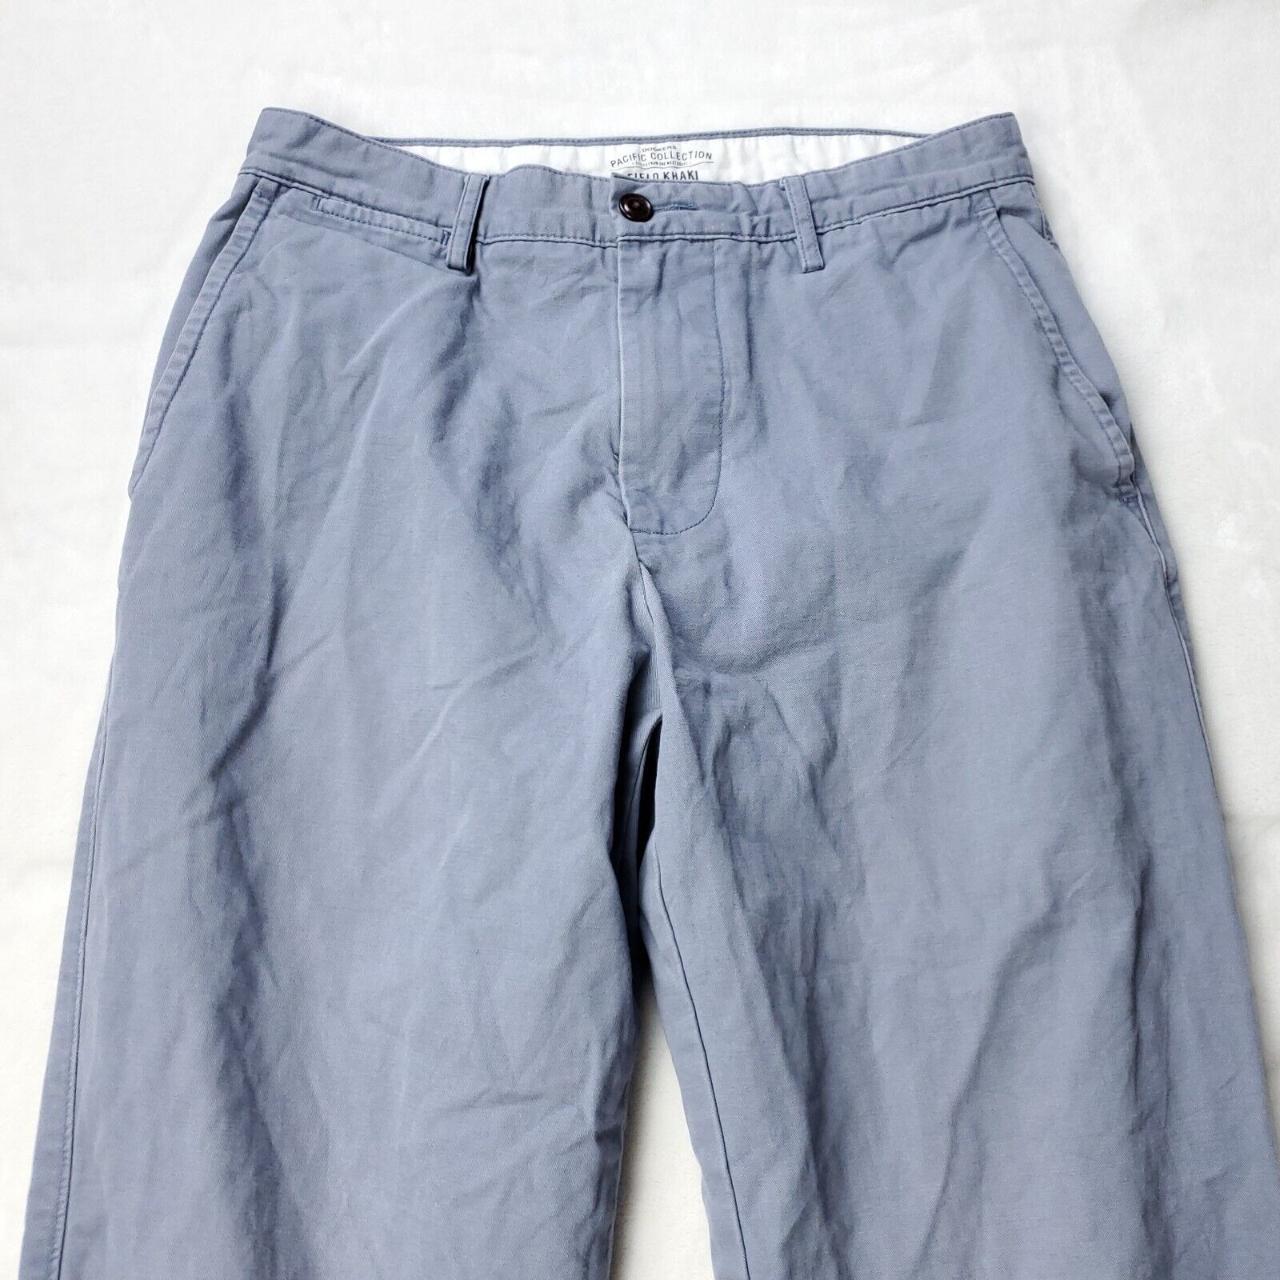 Dockers Field Khaki Pants Mens Size 30x29 Blue... - Depop